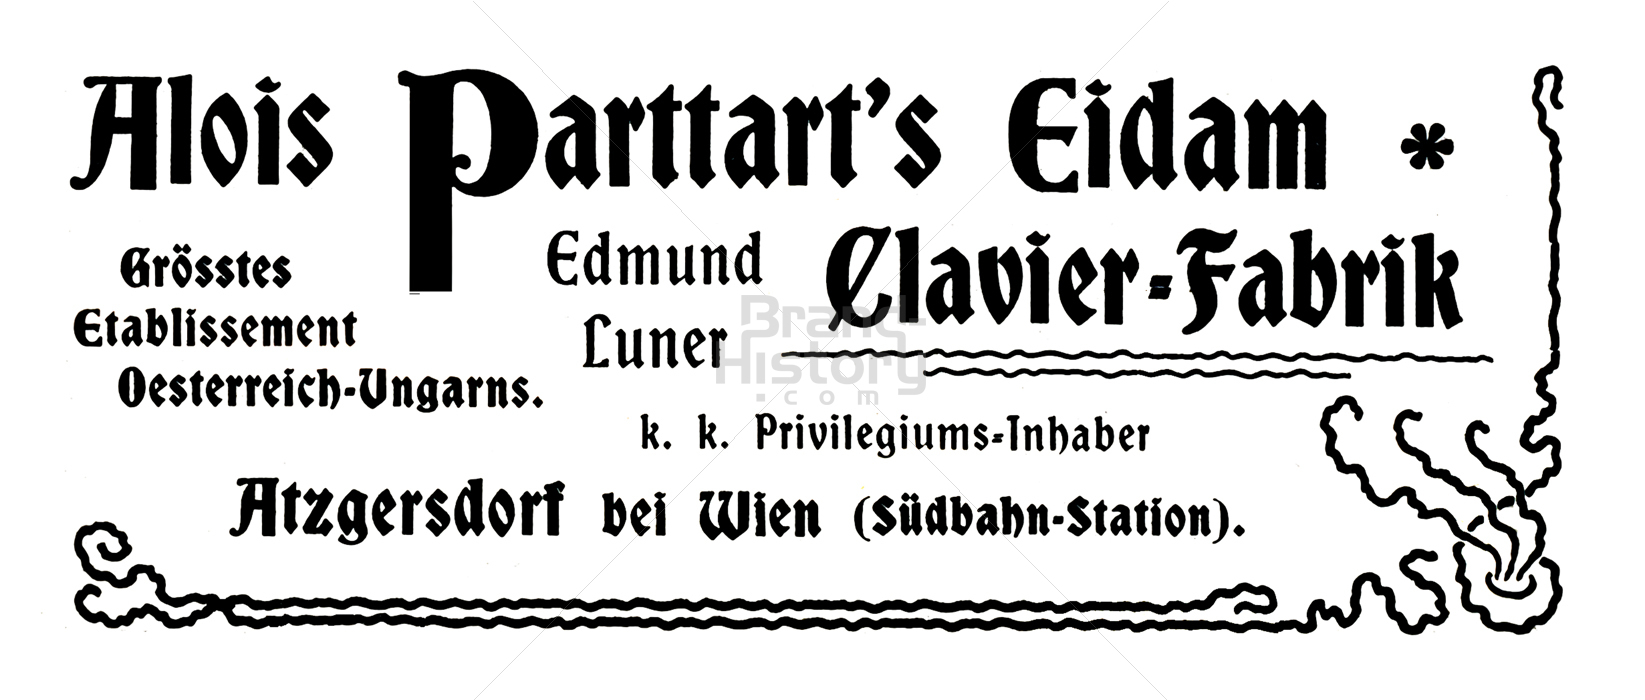 Alois Parttart's Eidam